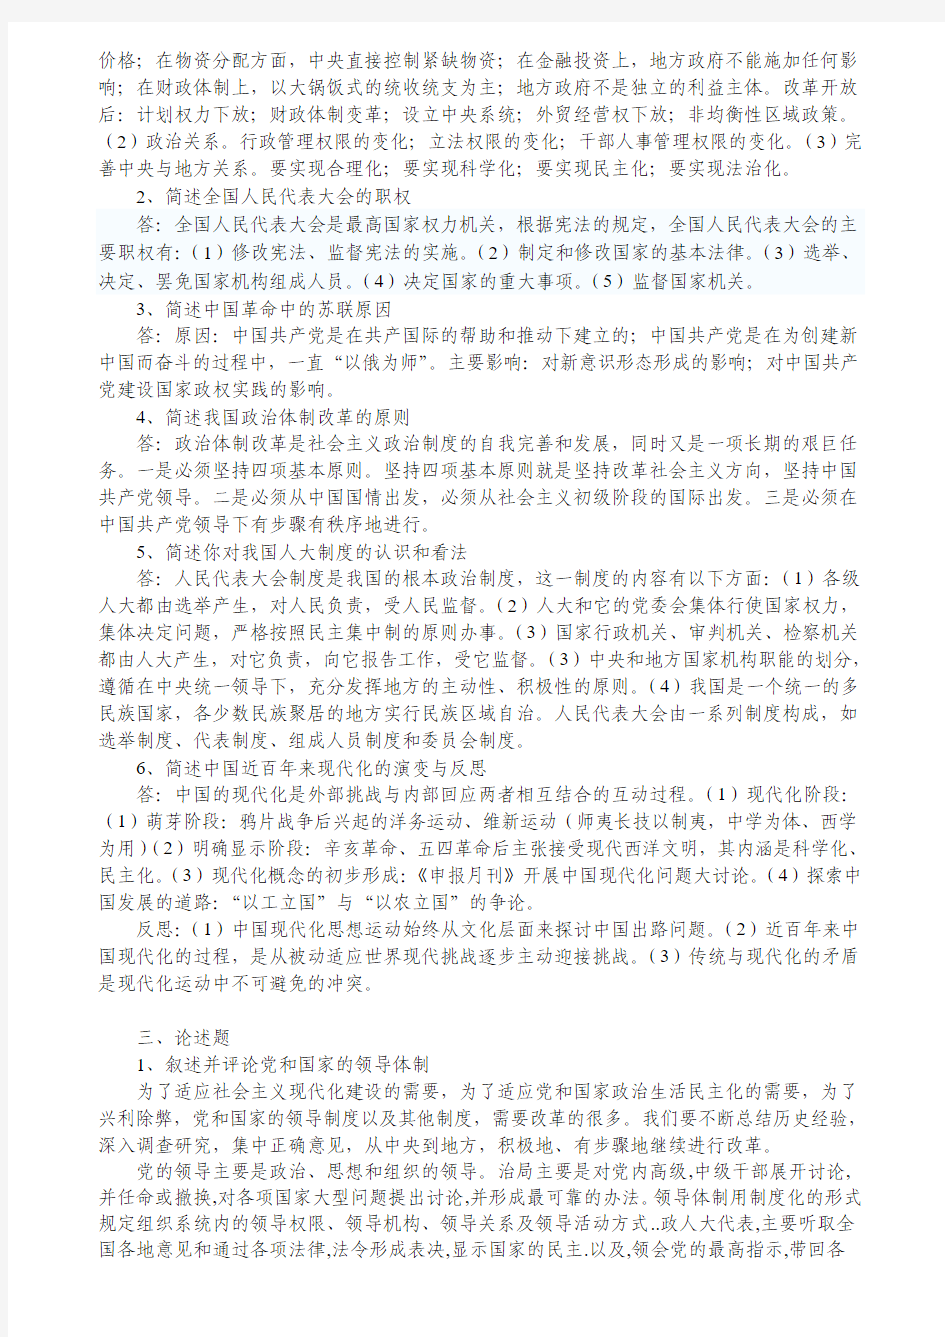 当代中国政治制度导论考试范围 (NEW)